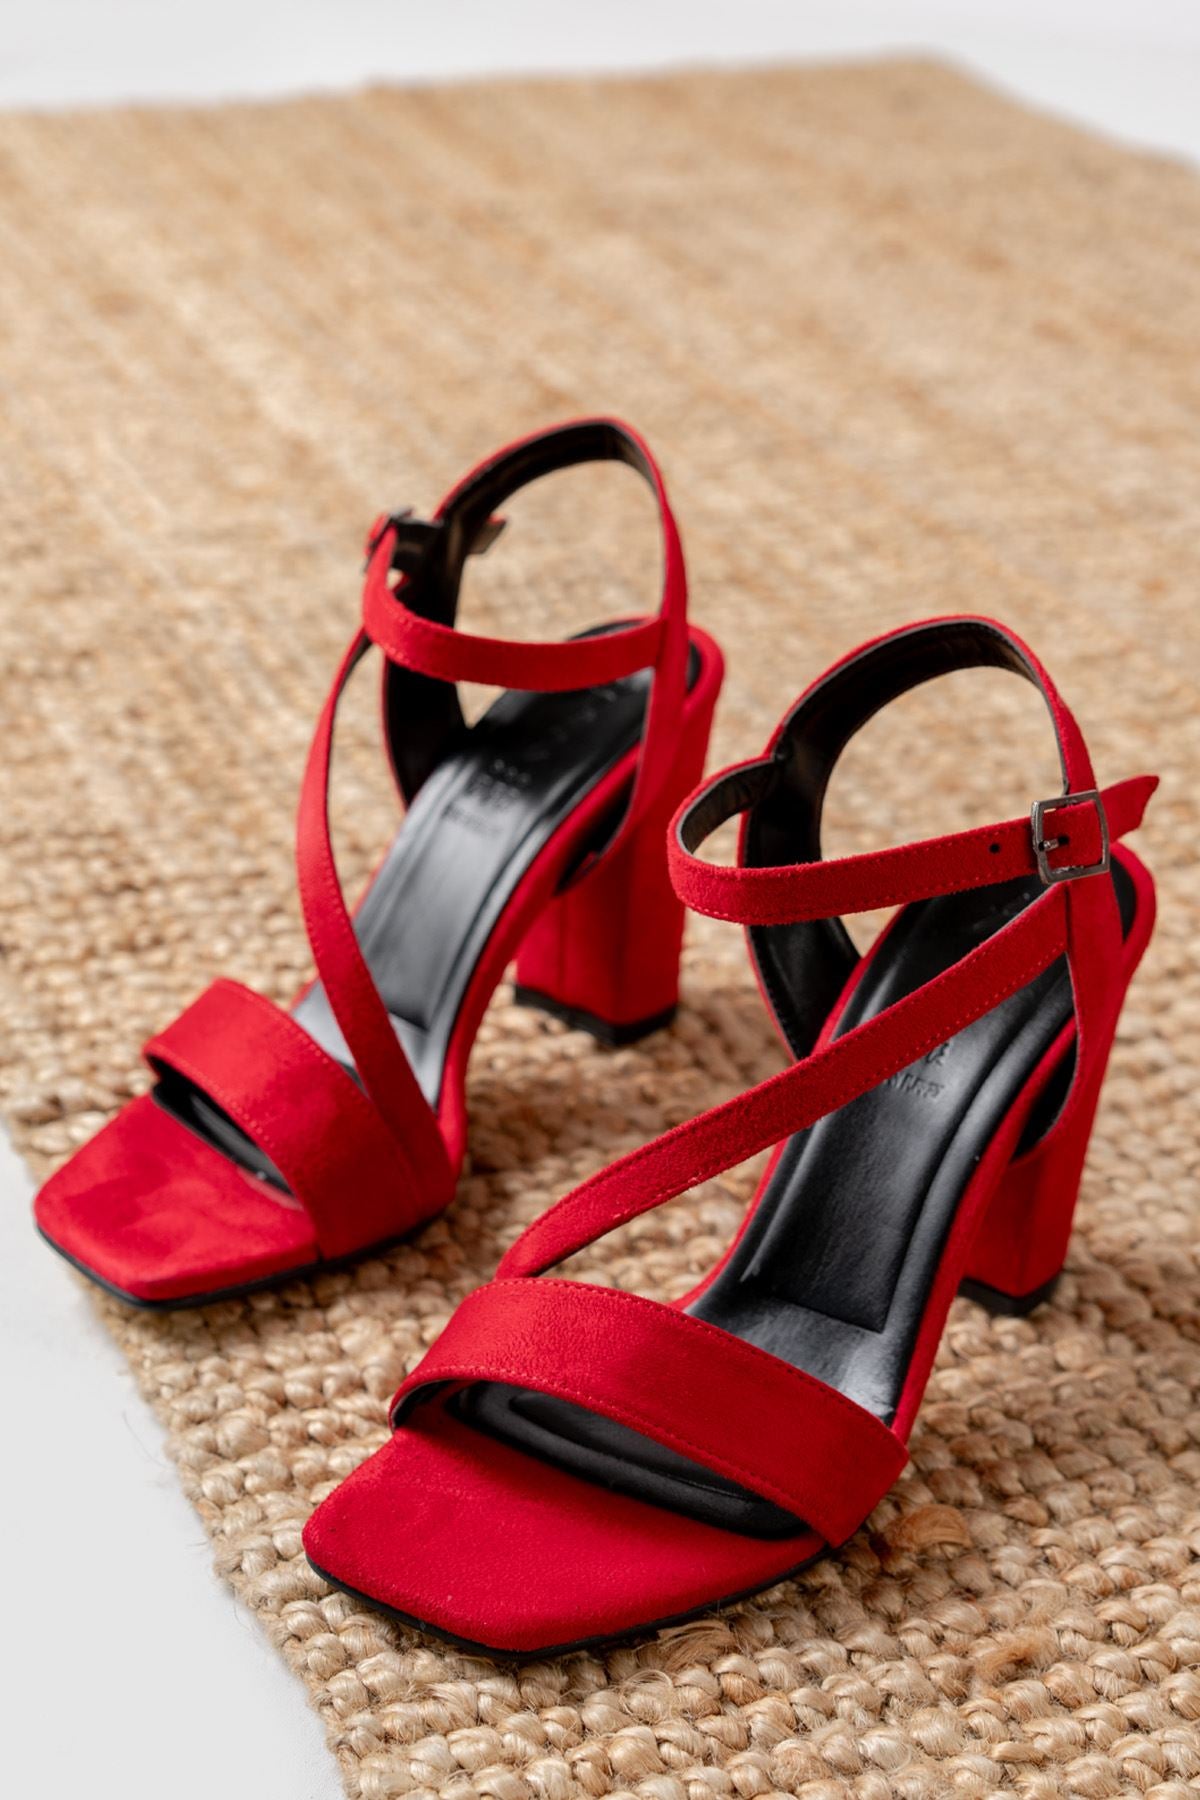 Rashin Red Suede High Heels Women's Shoes - STREETMODE™